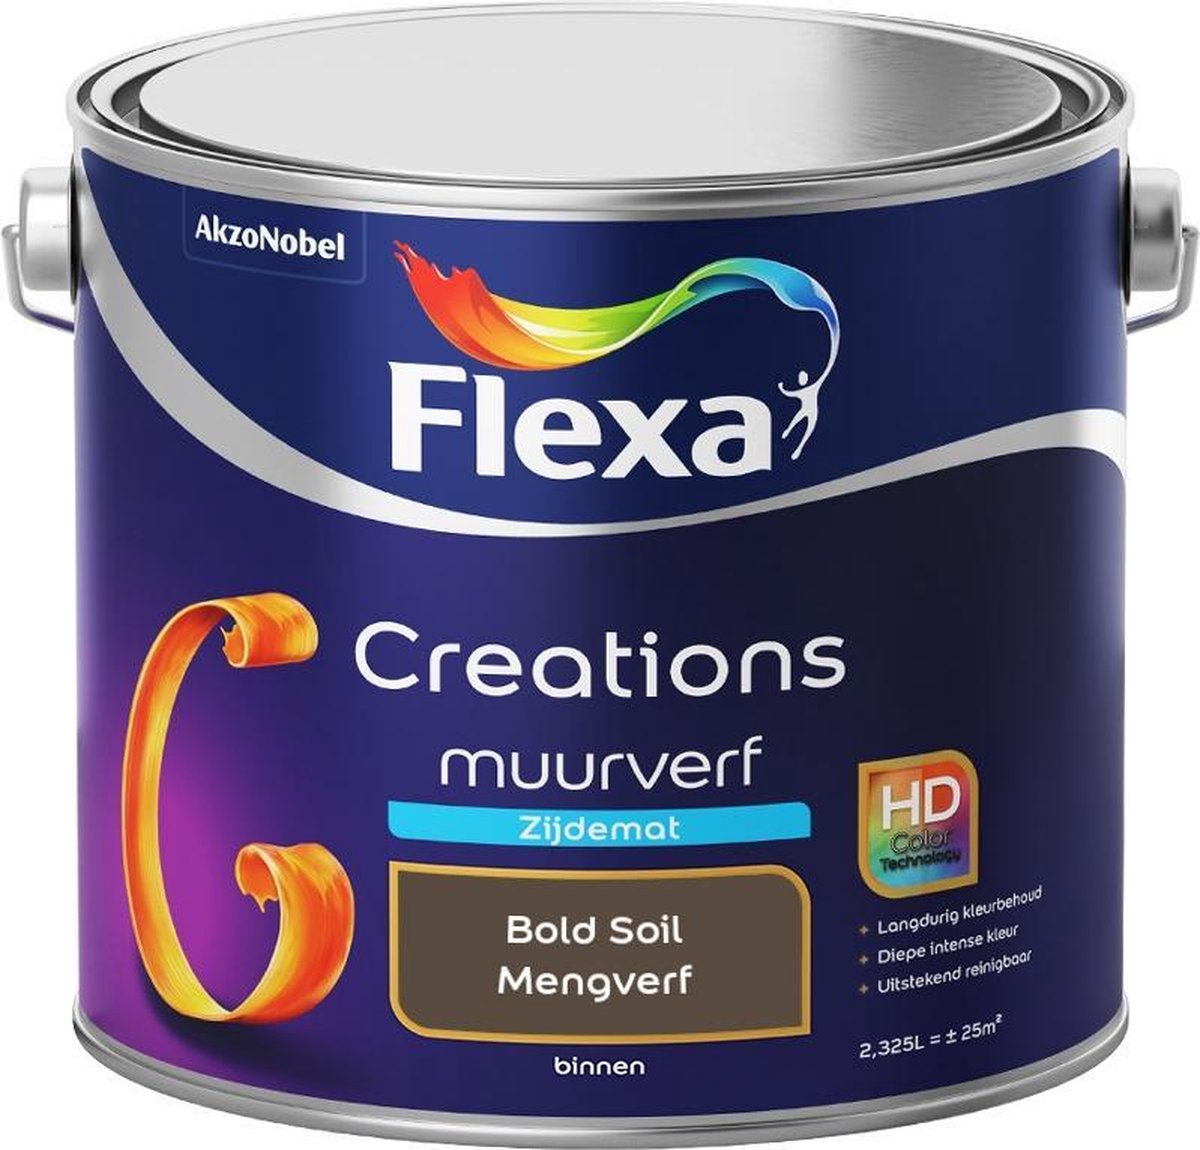 Flexa Creations Muurverf - Zijde Mat - Mengkleuren Collectie - Bold Soil - 2,5 liter